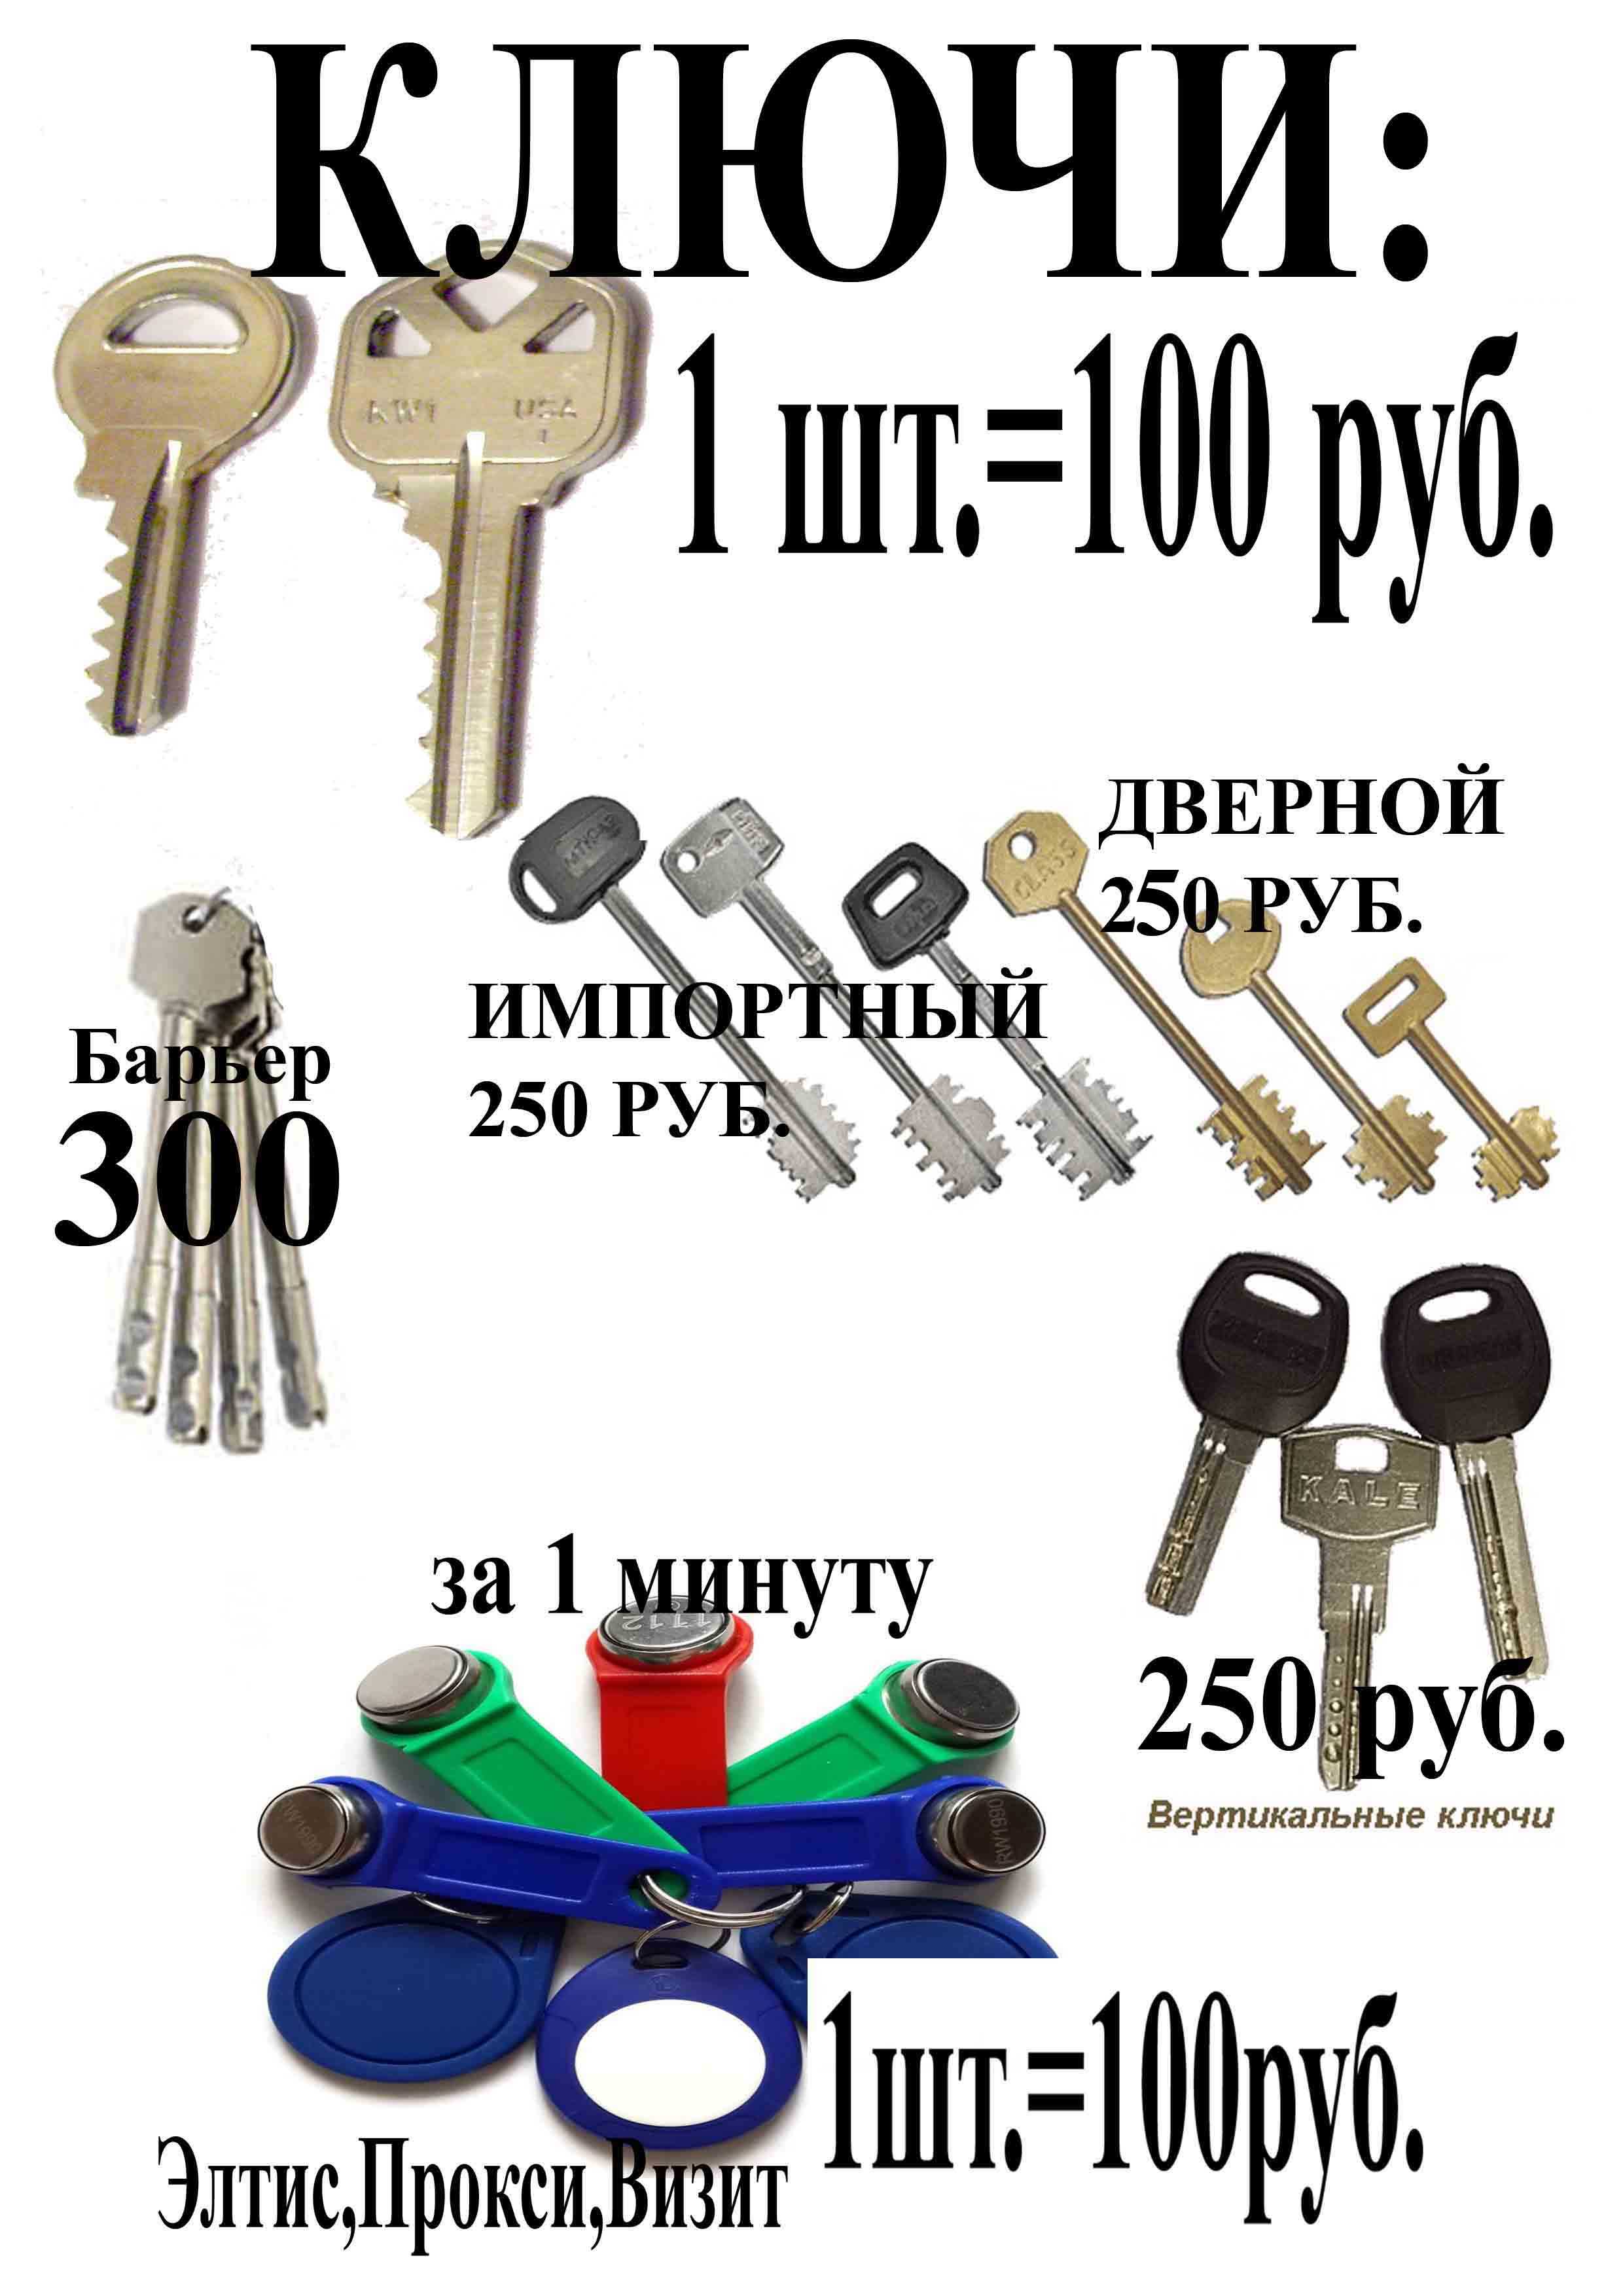 Рекламный ключ. Реклама ключей. Ремонт ключей. Реклама по изготовлению ключей. Копия ключей.